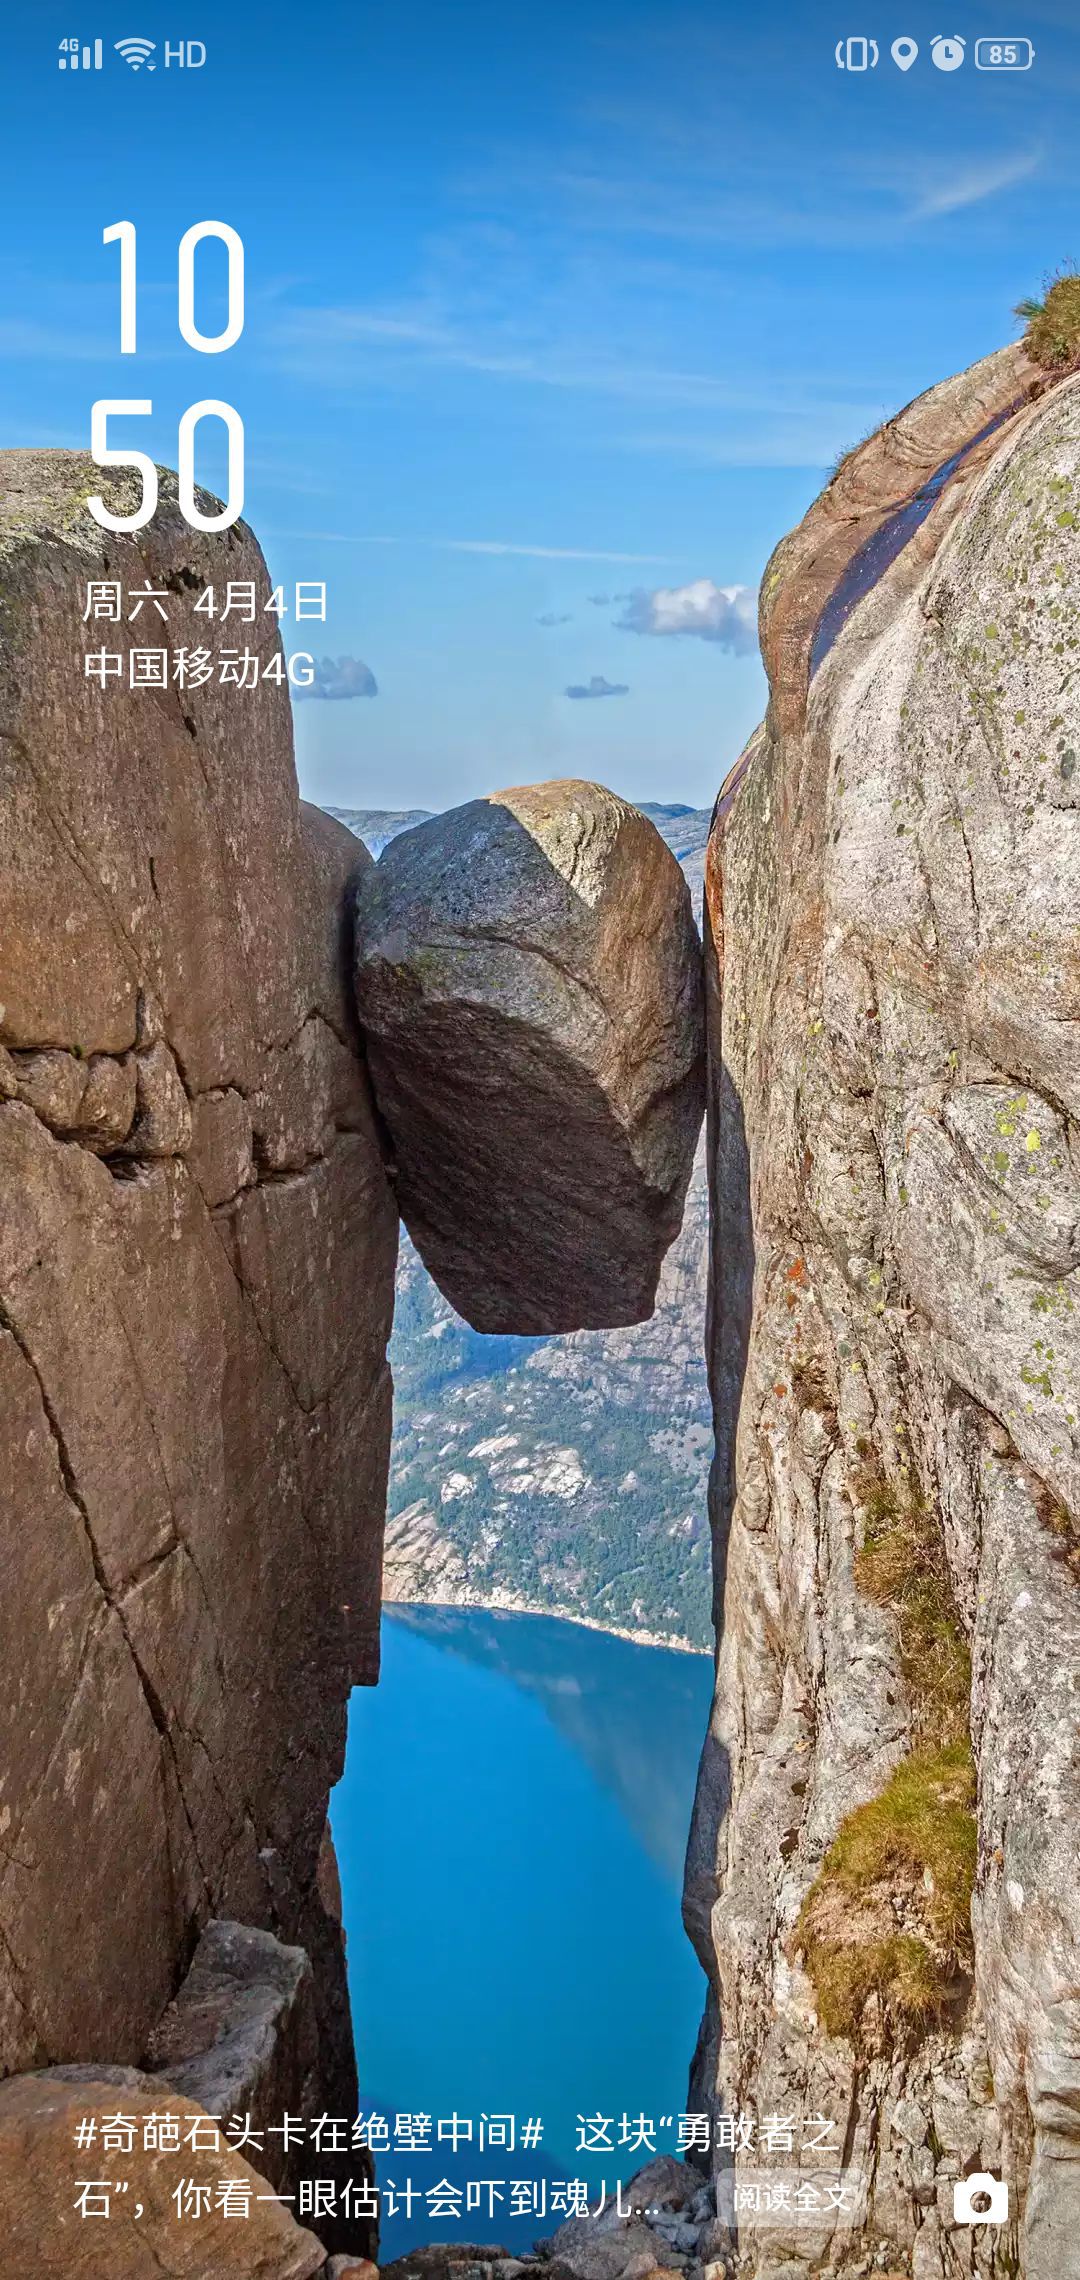 这是我见过世界上最独特的石头风景啦！